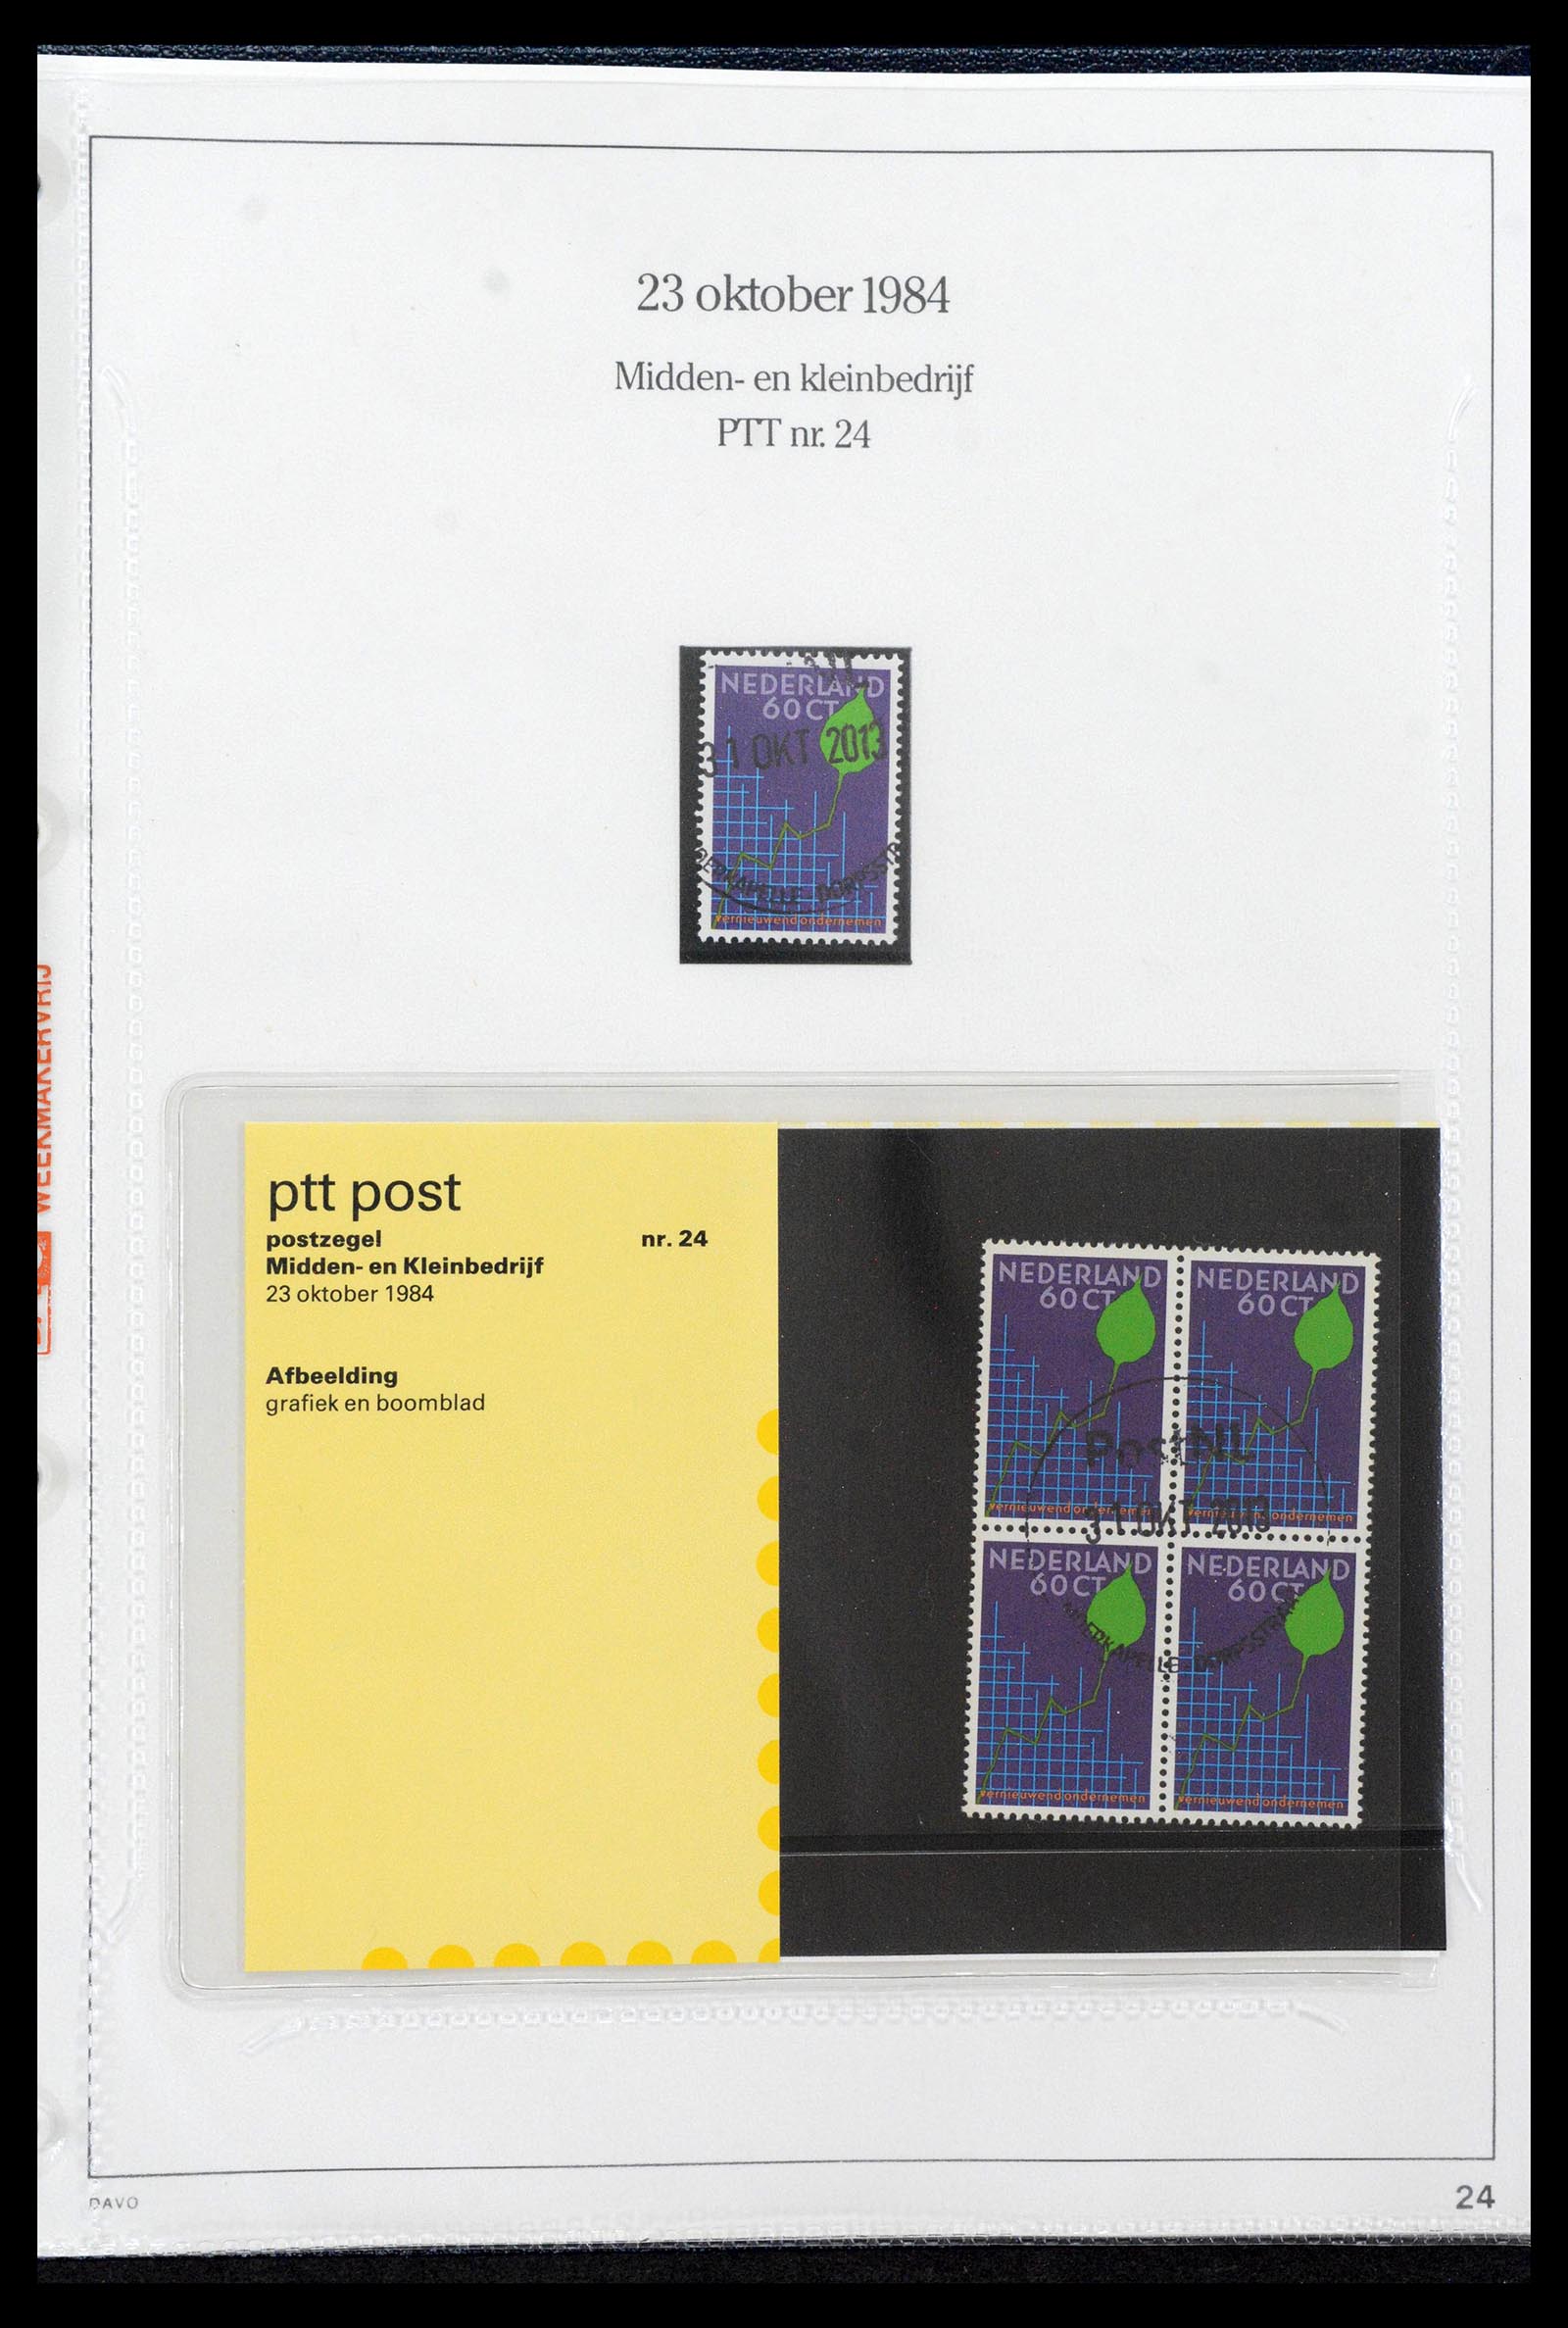 39121 0024 - Stamp collection 39121 Netherlands presentationpacks 1982-2001.